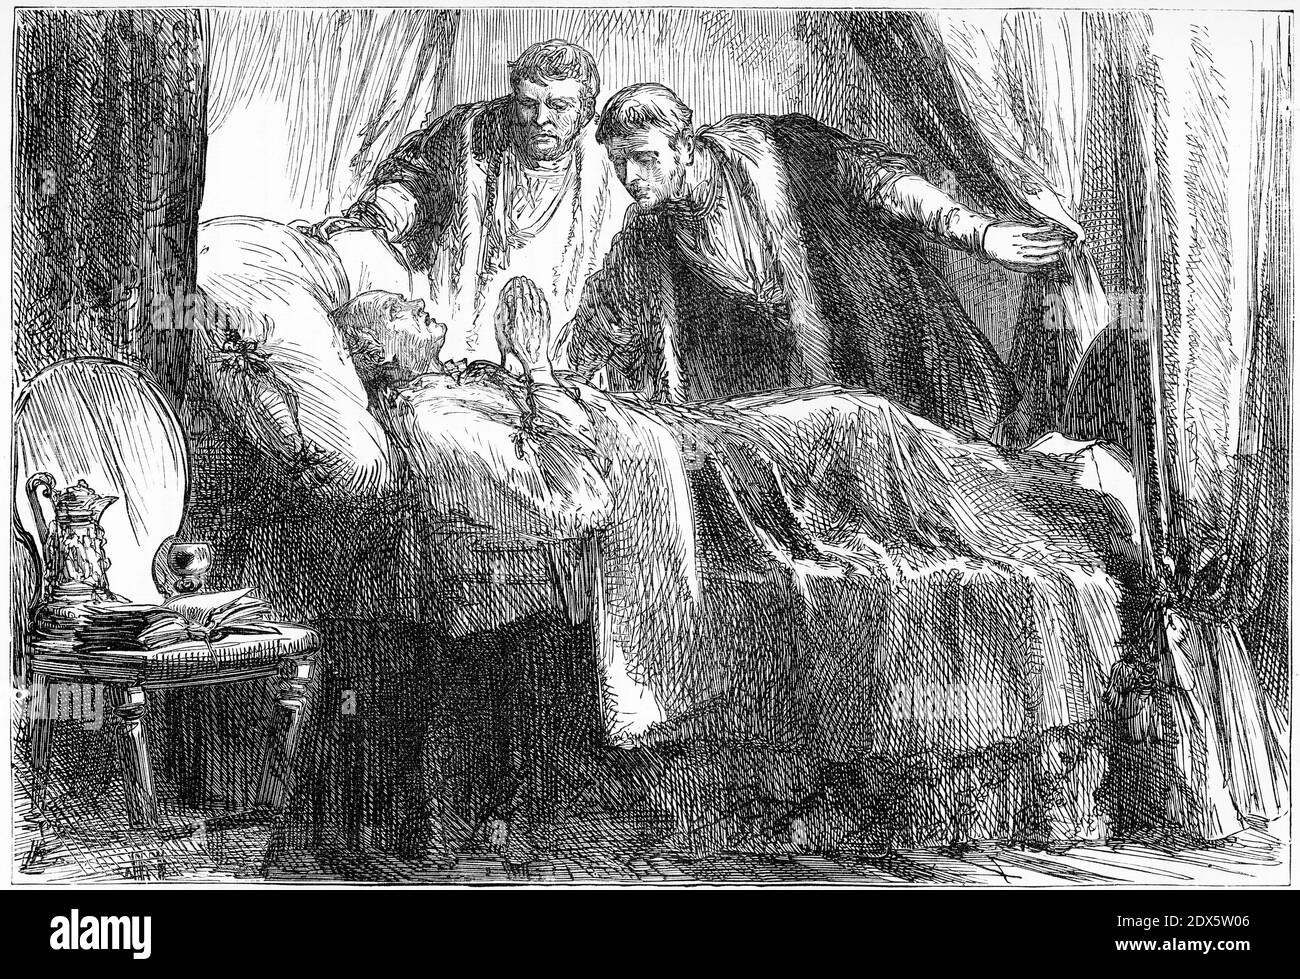 Gravure de Martin Luther sur son lit de mort. Illustration de 'l'histoire du protestantisme' par James Aitken Wylie (1808-1890), pub. 1878 Banque D'Images